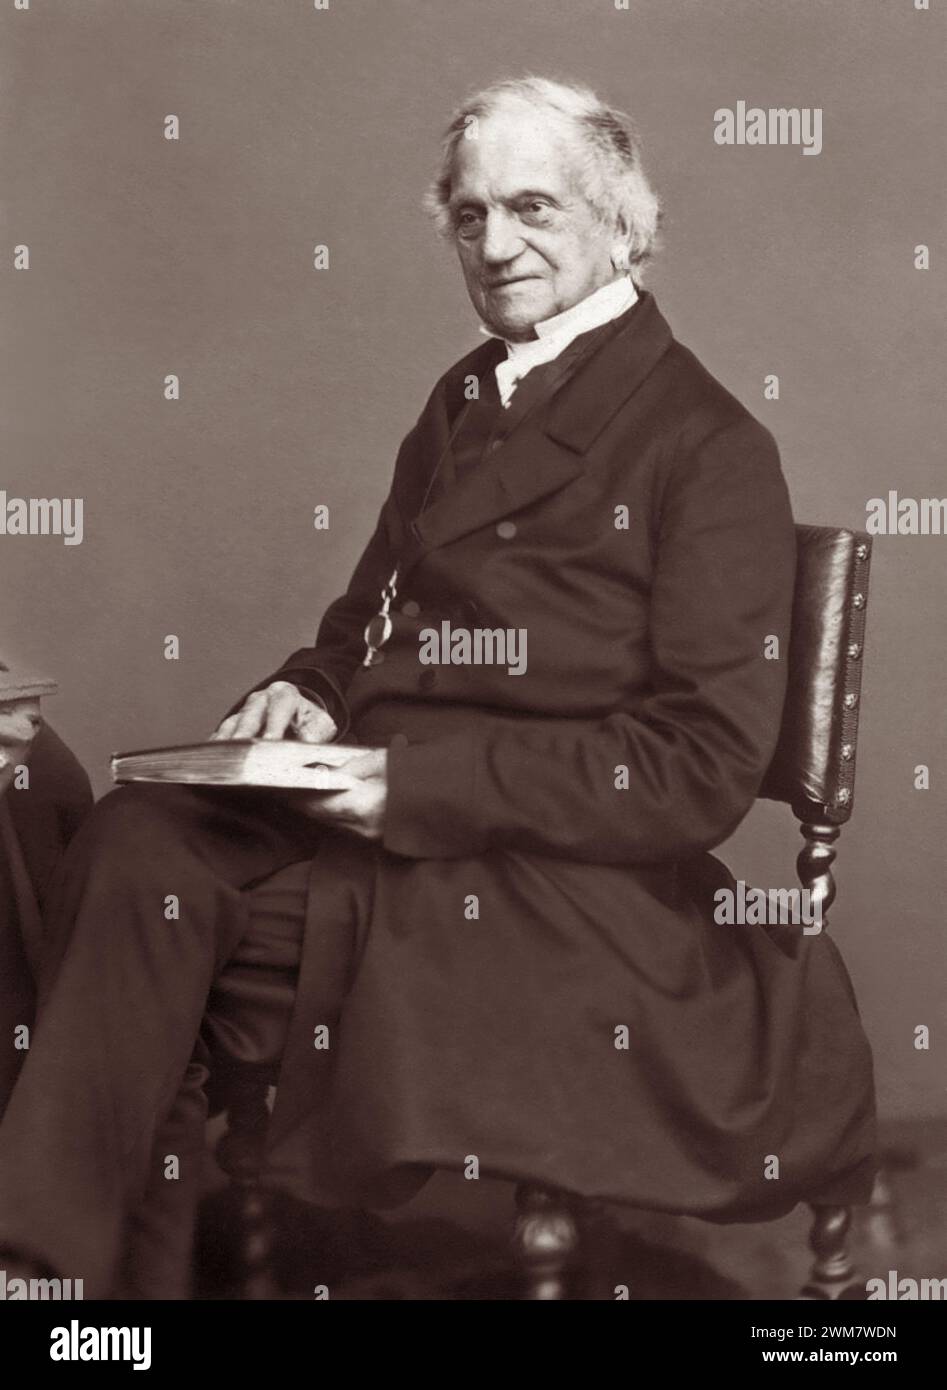 Porträt von Adam Sedgwick (1785–1873), einem Gründer der modernen Geologie, der die devonische und kambrische (kambrische Explosion) geologische Periode vorschlug. Obwohl Sedgwick ein Mentor des jungen Charles Darwin war, widersetzte er sich der materialistischen Natur von Darwins Evolutionstheorie durch natürliche Zuchtwahl. Stockfoto